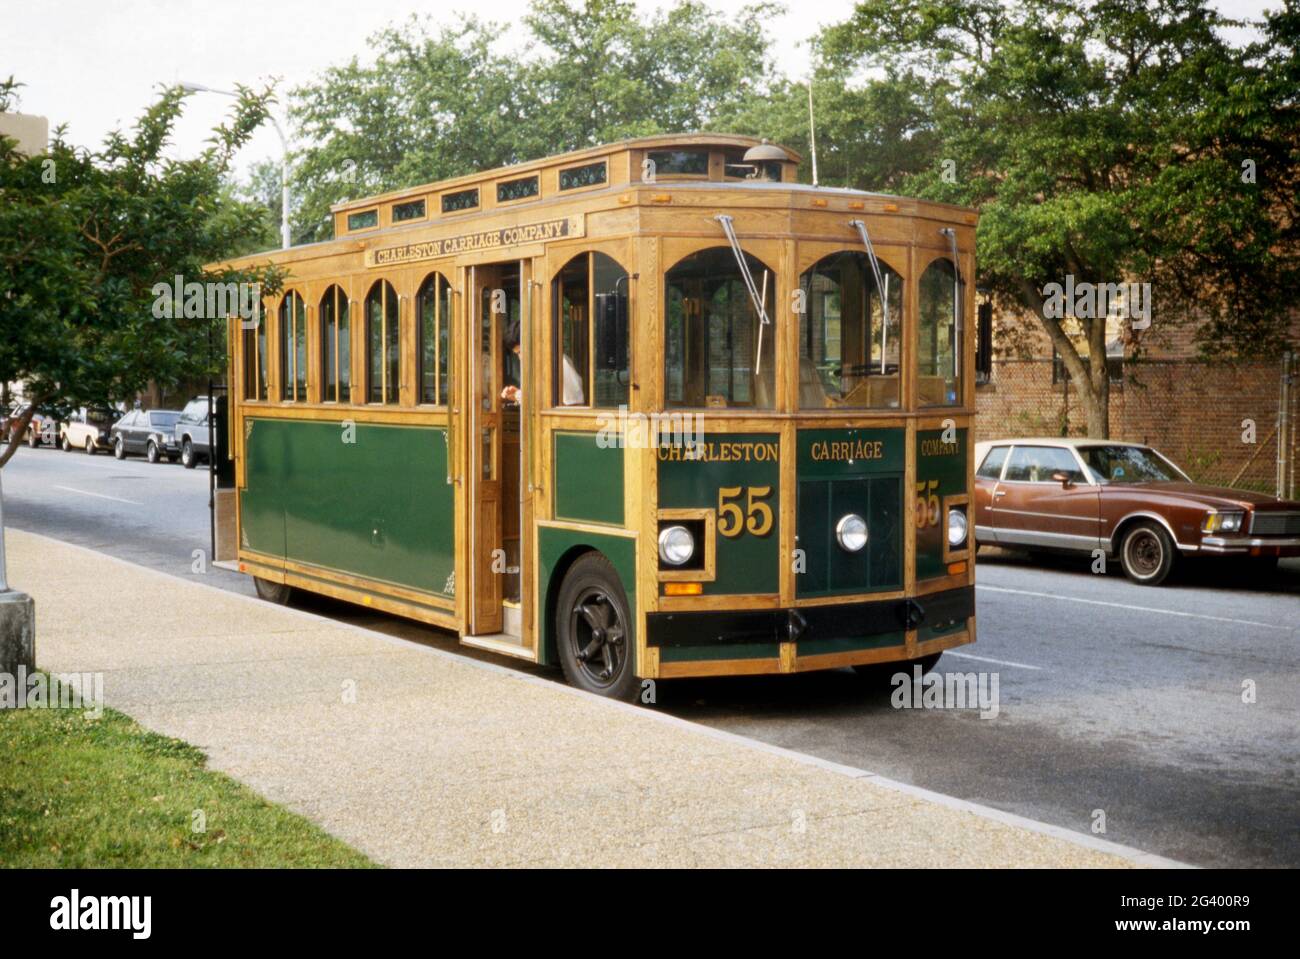 Un ‘trolley’ turistico – essenzialmente un autobus motorizzato fatto assomigliare a un trolley, un tram o un tram – che offre tour storici delle parti coloniali storiche di Charleston, Carolina del Sud, USA nel 1984. Con abbondanza di legno verniciato in esposizione, il numero 55 è stato gestito dalla Charleston Carriage Company. Charleston è la città più grande dello stato americano del South Carolina. Questa immagine è tratta da un vecchio lucido a colori americano amatoriale Kodak – una fotografia d'epoca degli anni '80. Foto Stock